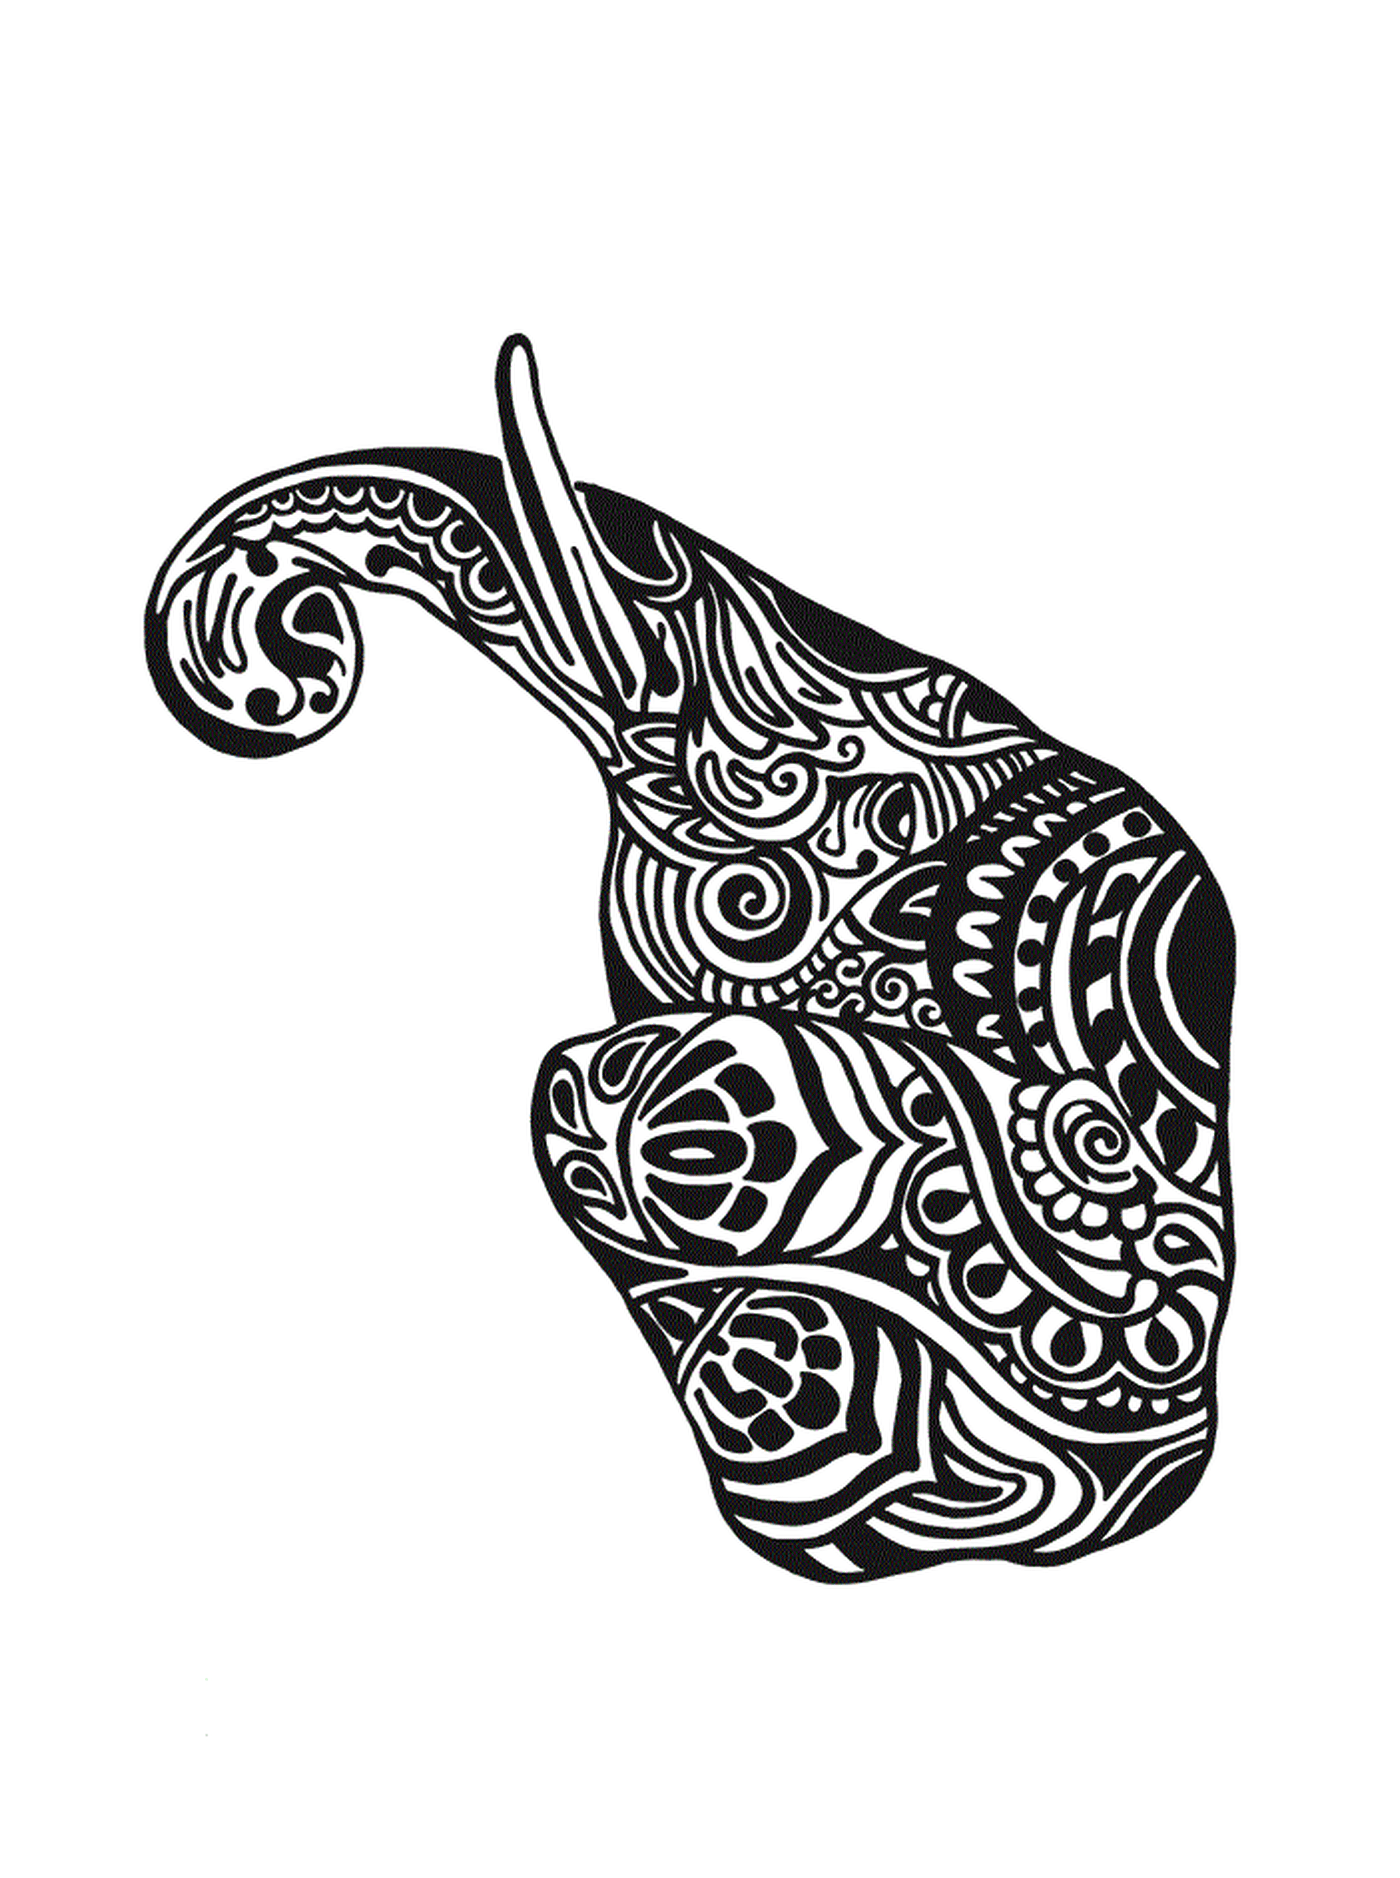  Un elefante con patrones complejos en su cuerpo 